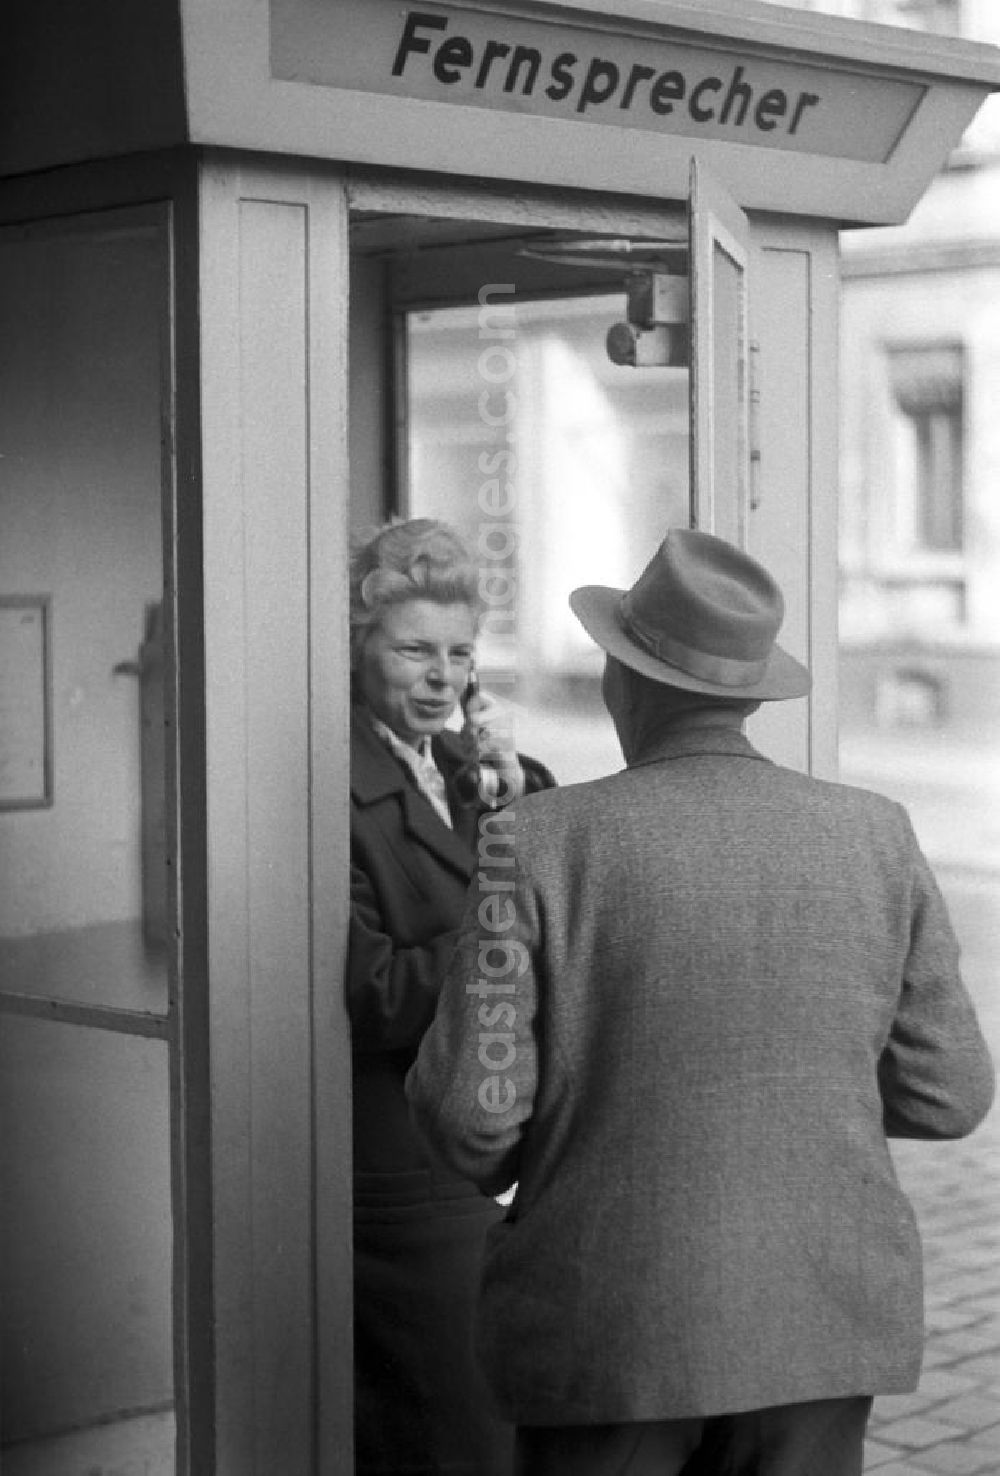 GDR photo archive: Leipzig - Eine Frau telefoniert in einem Telefonhäuschen in Leipzig mit einem öffentlichen Fernsprecher, ihr Mann hört an der geöffneten Tür mit zu.